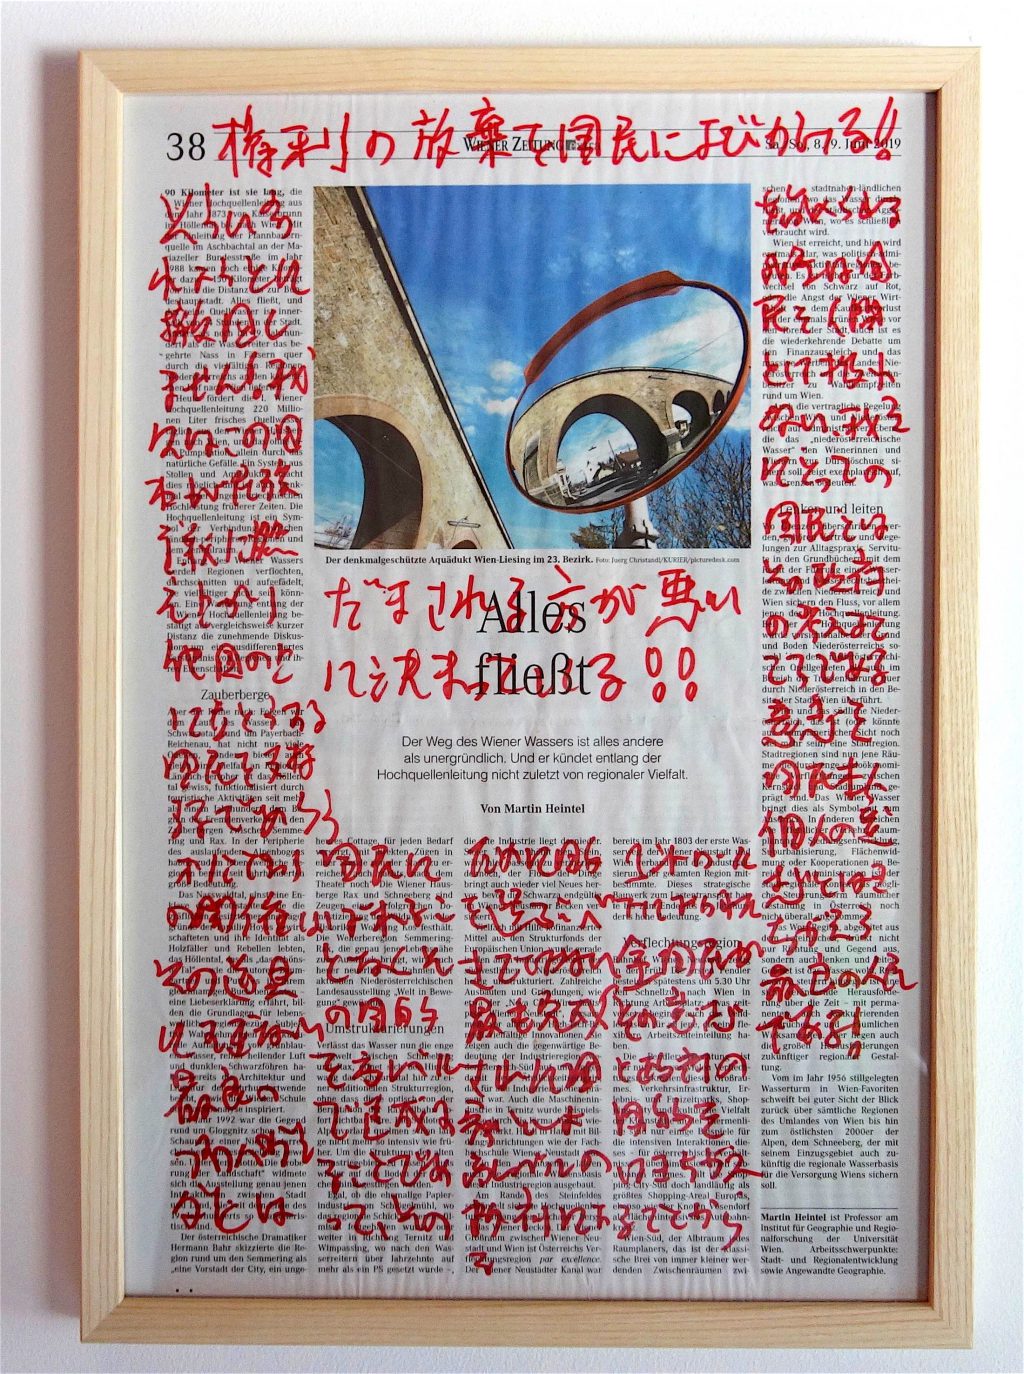 丹羽良徳 NIWA Yoshinori “Manifesting Newspaper”「新聞をマニフェストする」2019, Marker on newspaper, unique